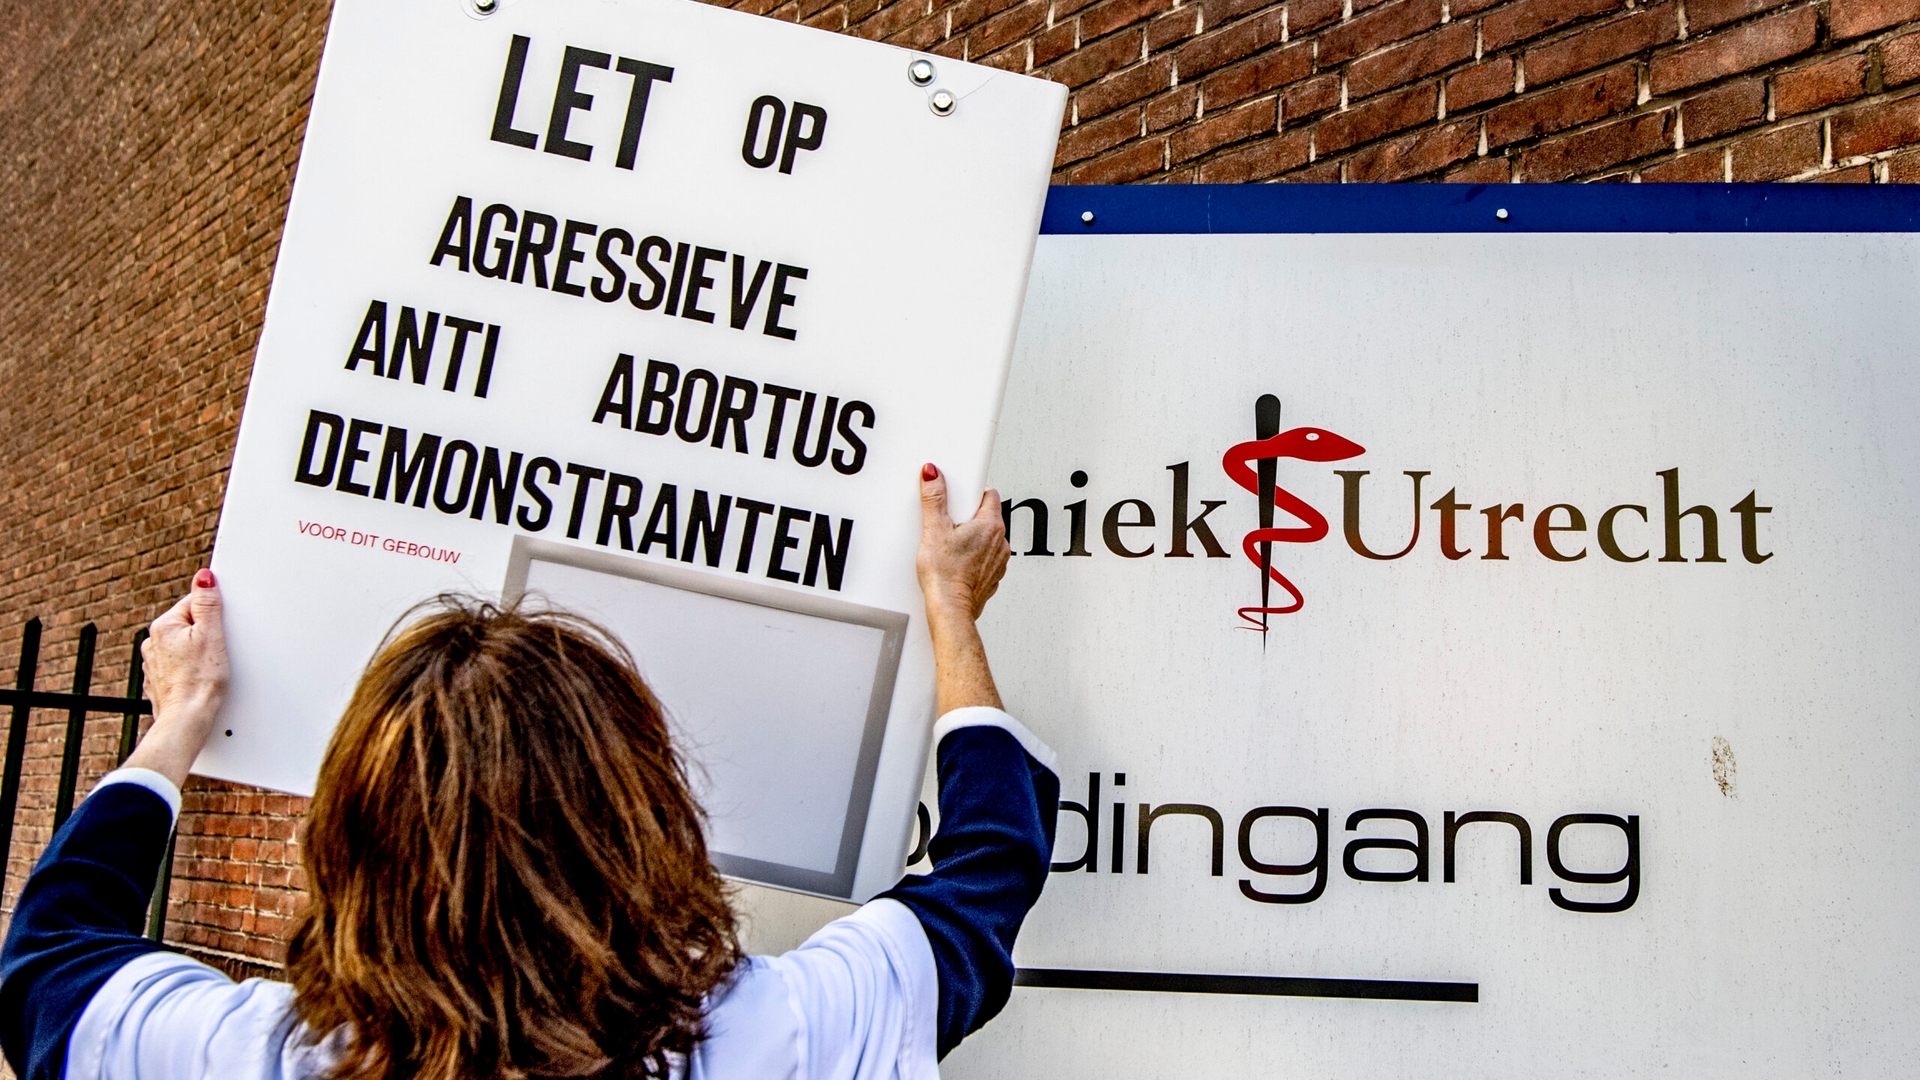 Bord waarschuwt voor agressieve anti-abortusdemonstranten